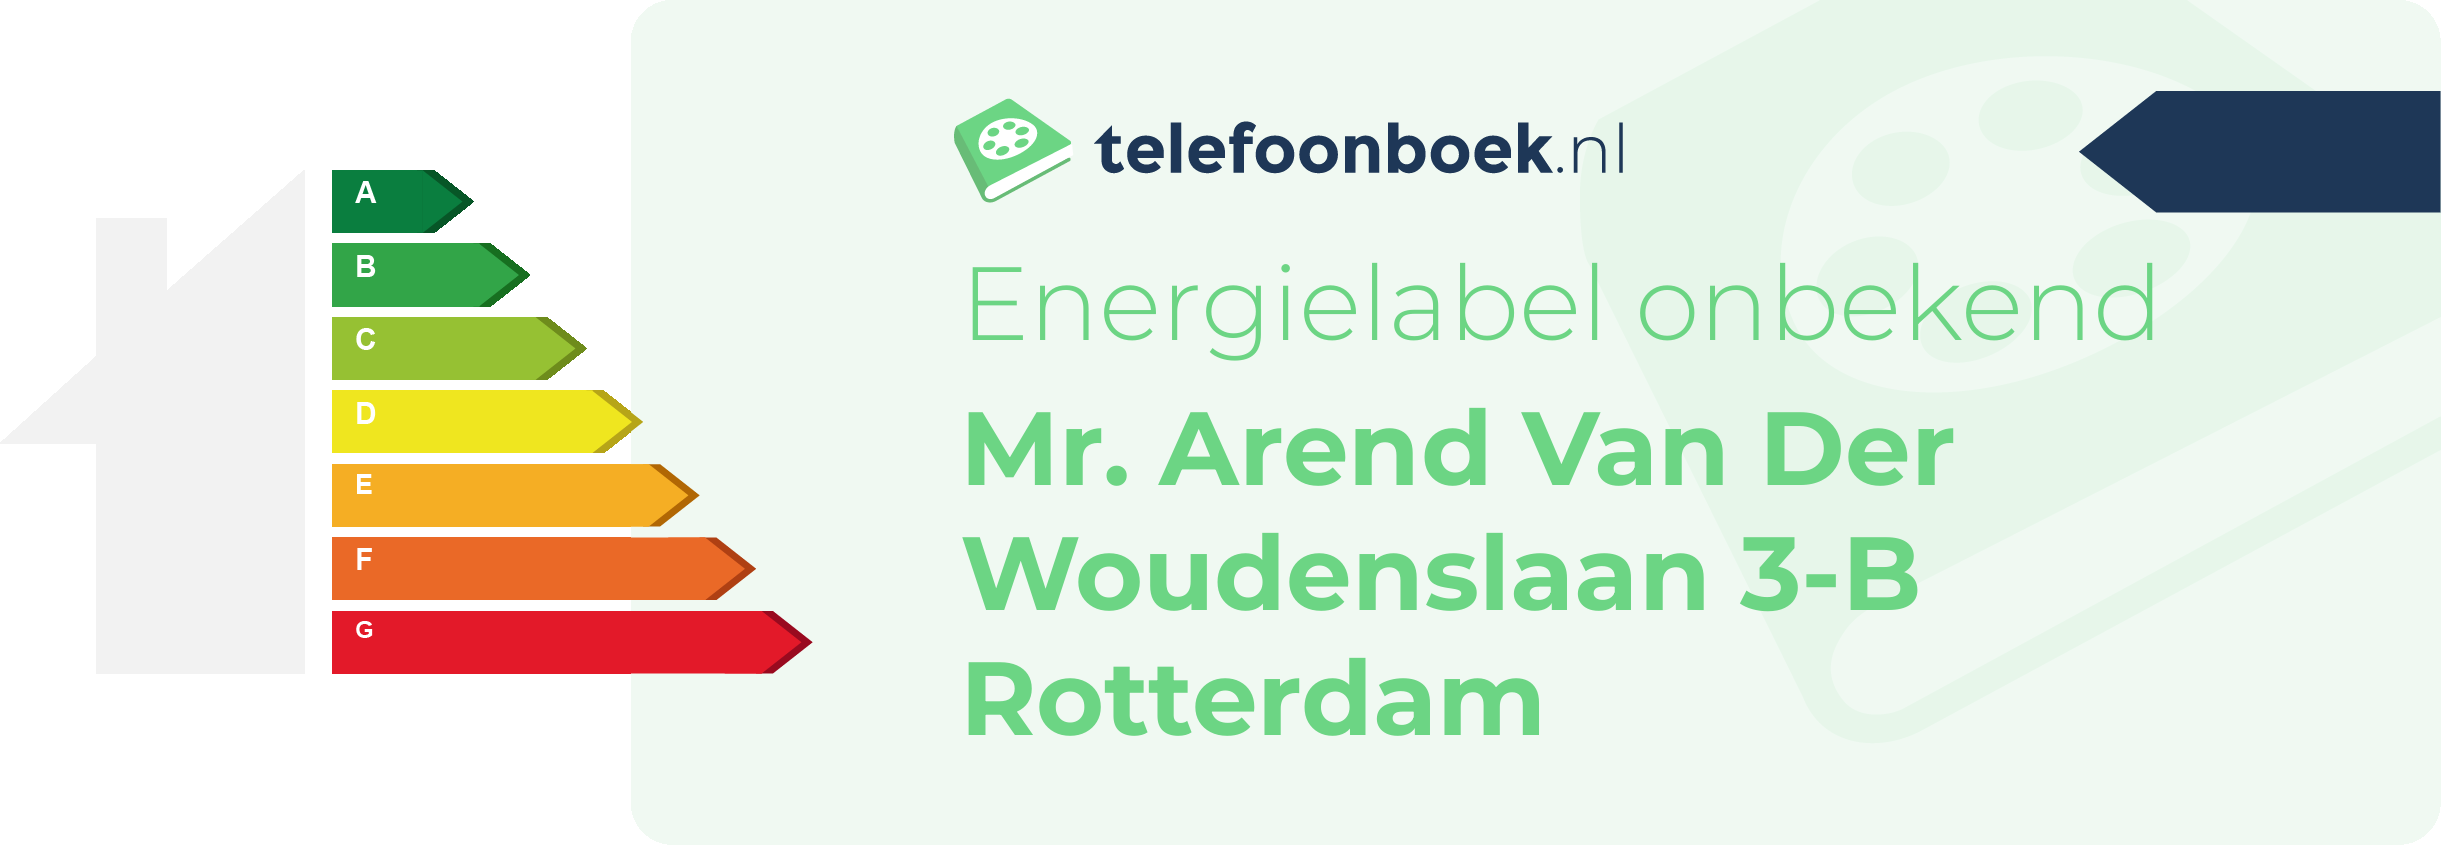 Energielabel Mr. Arend Van Der Woudenslaan 3-B Rotterdam